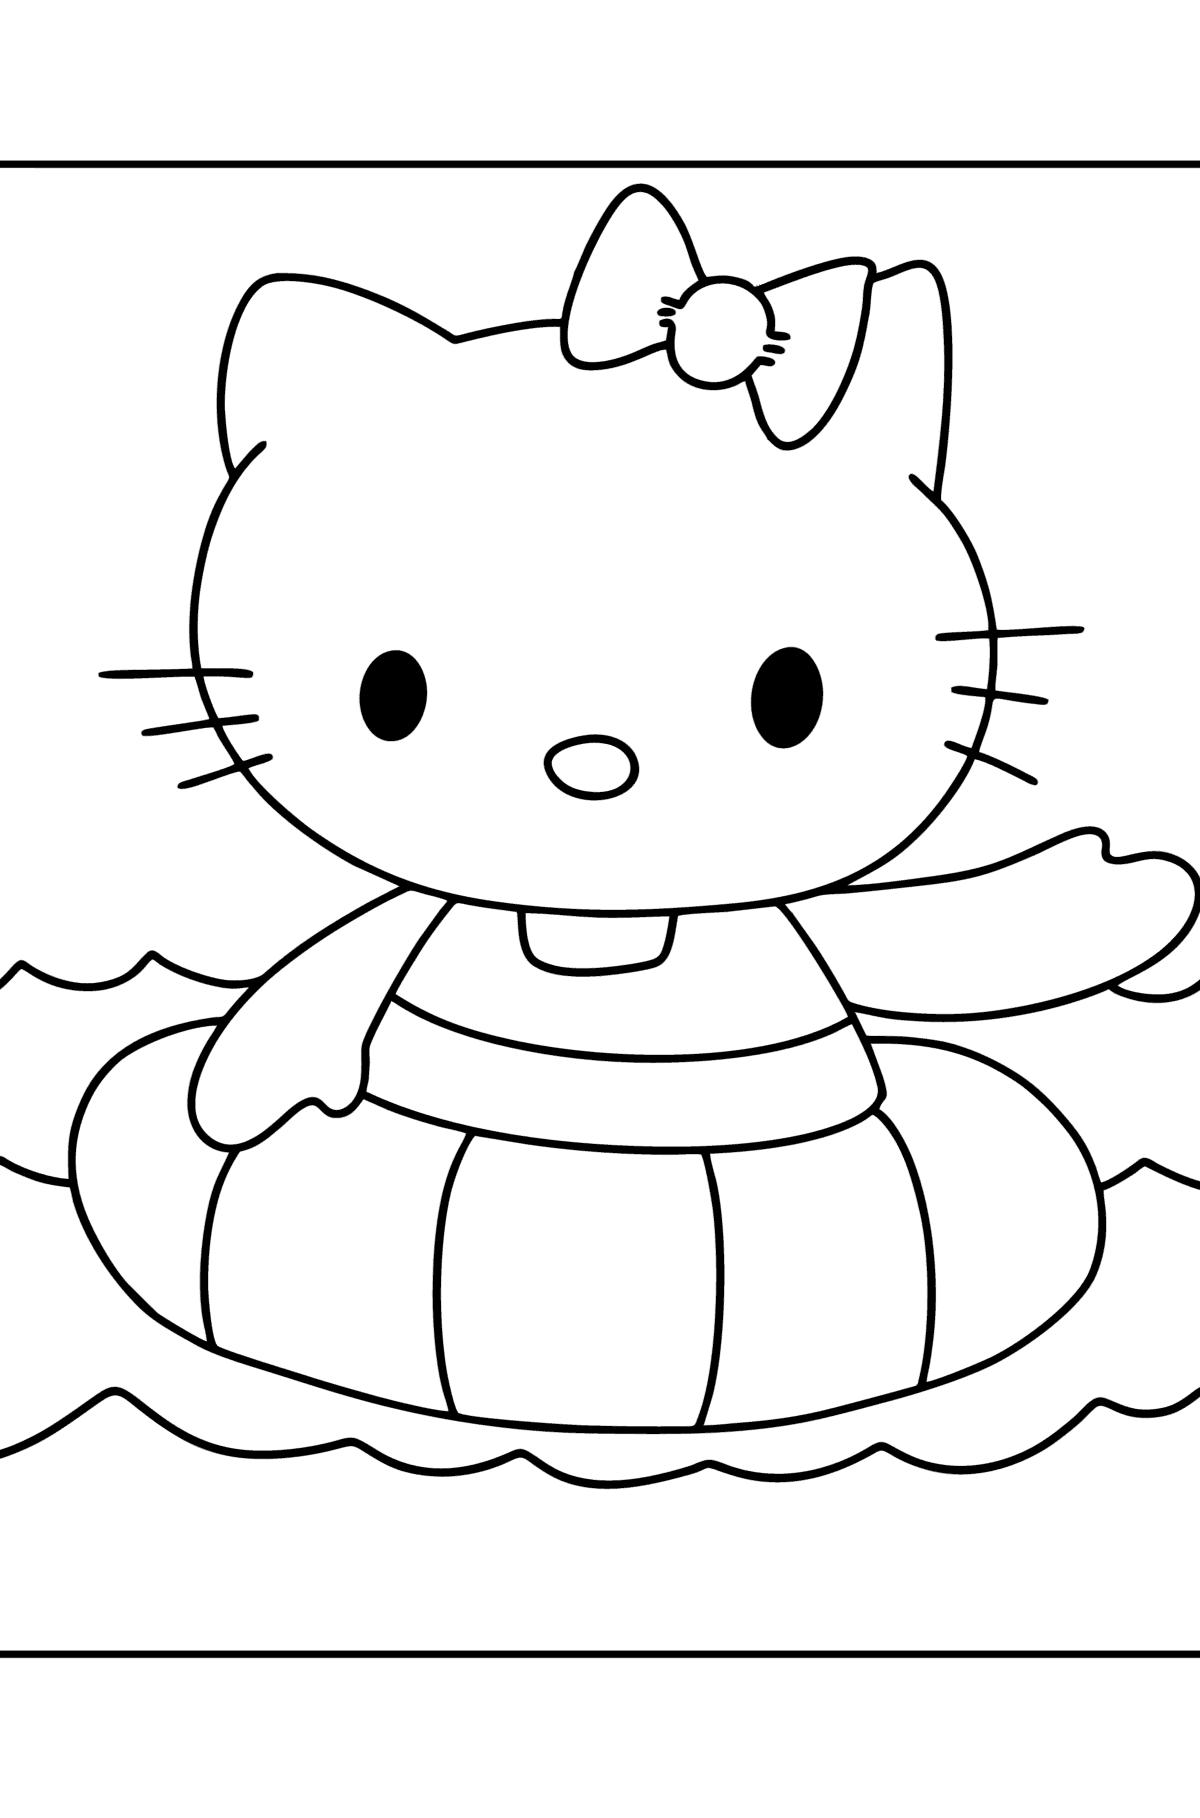 Coloriage Hello Kitty nage - Coloriages pour les Enfants